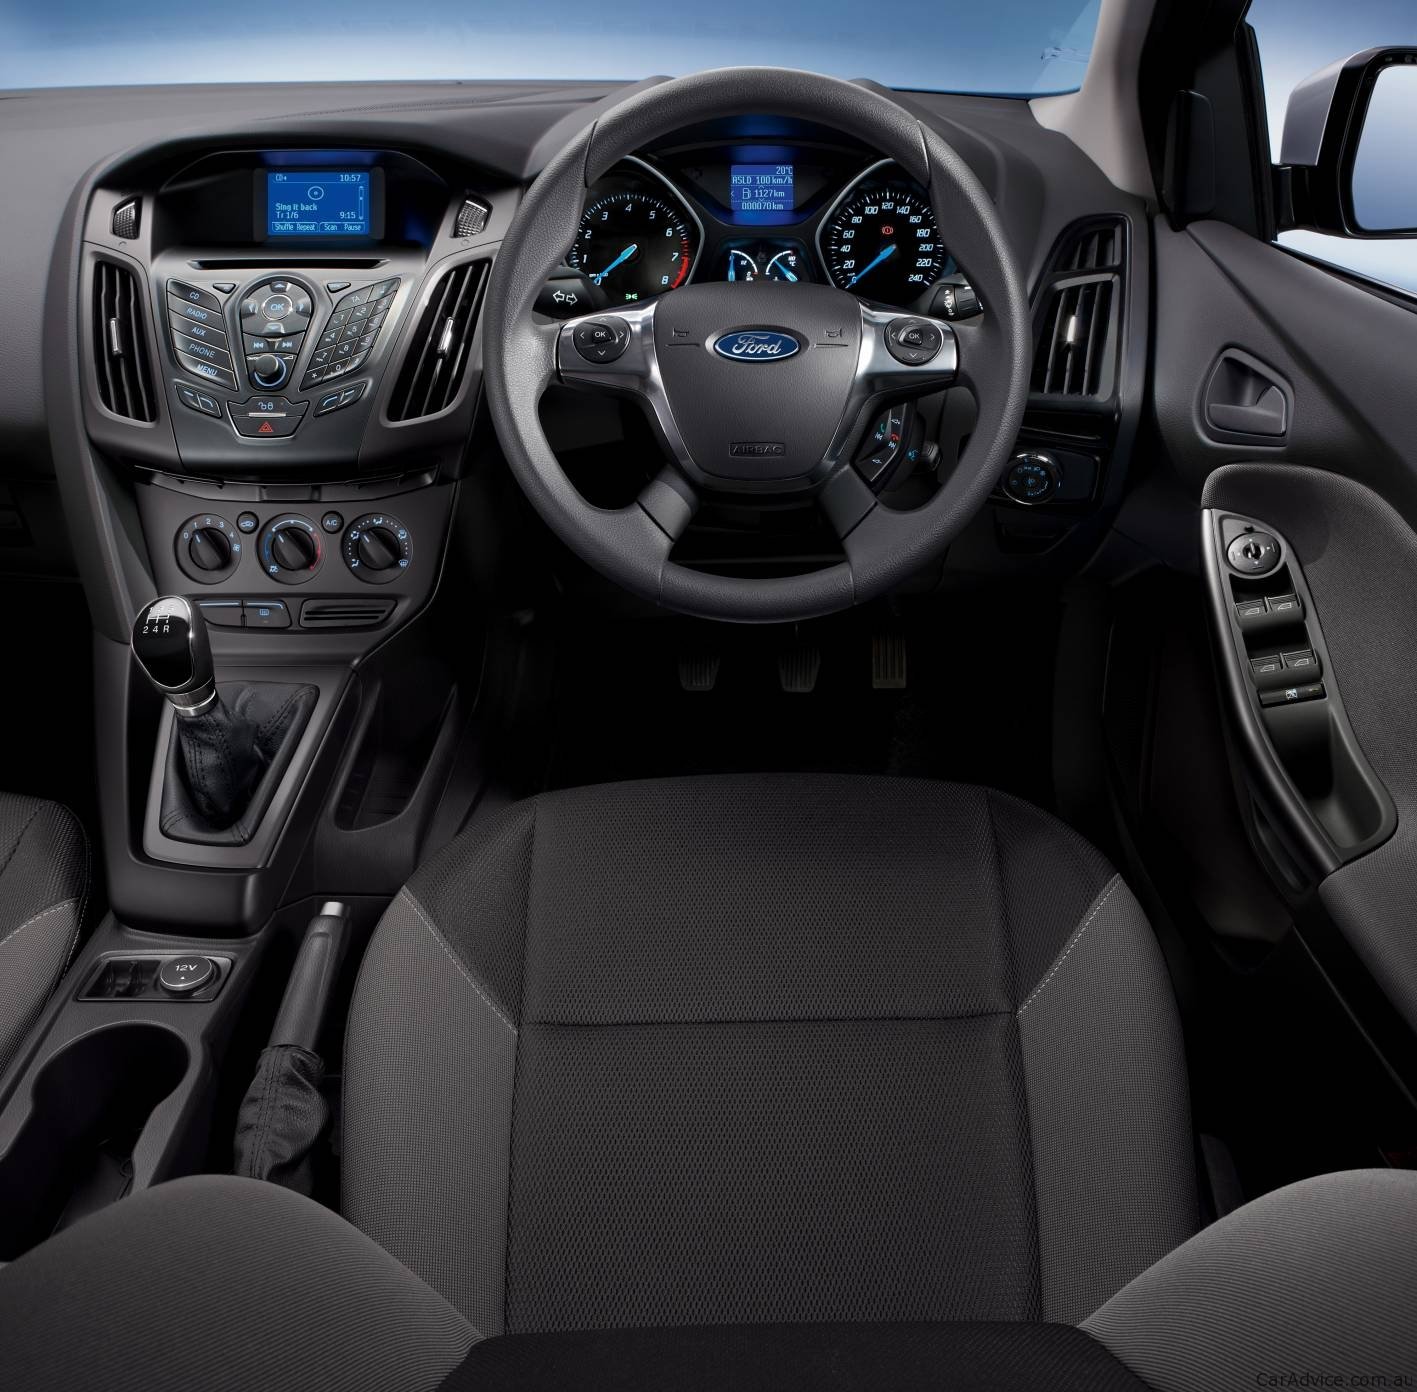 Ford focus ambiente sedan review #10